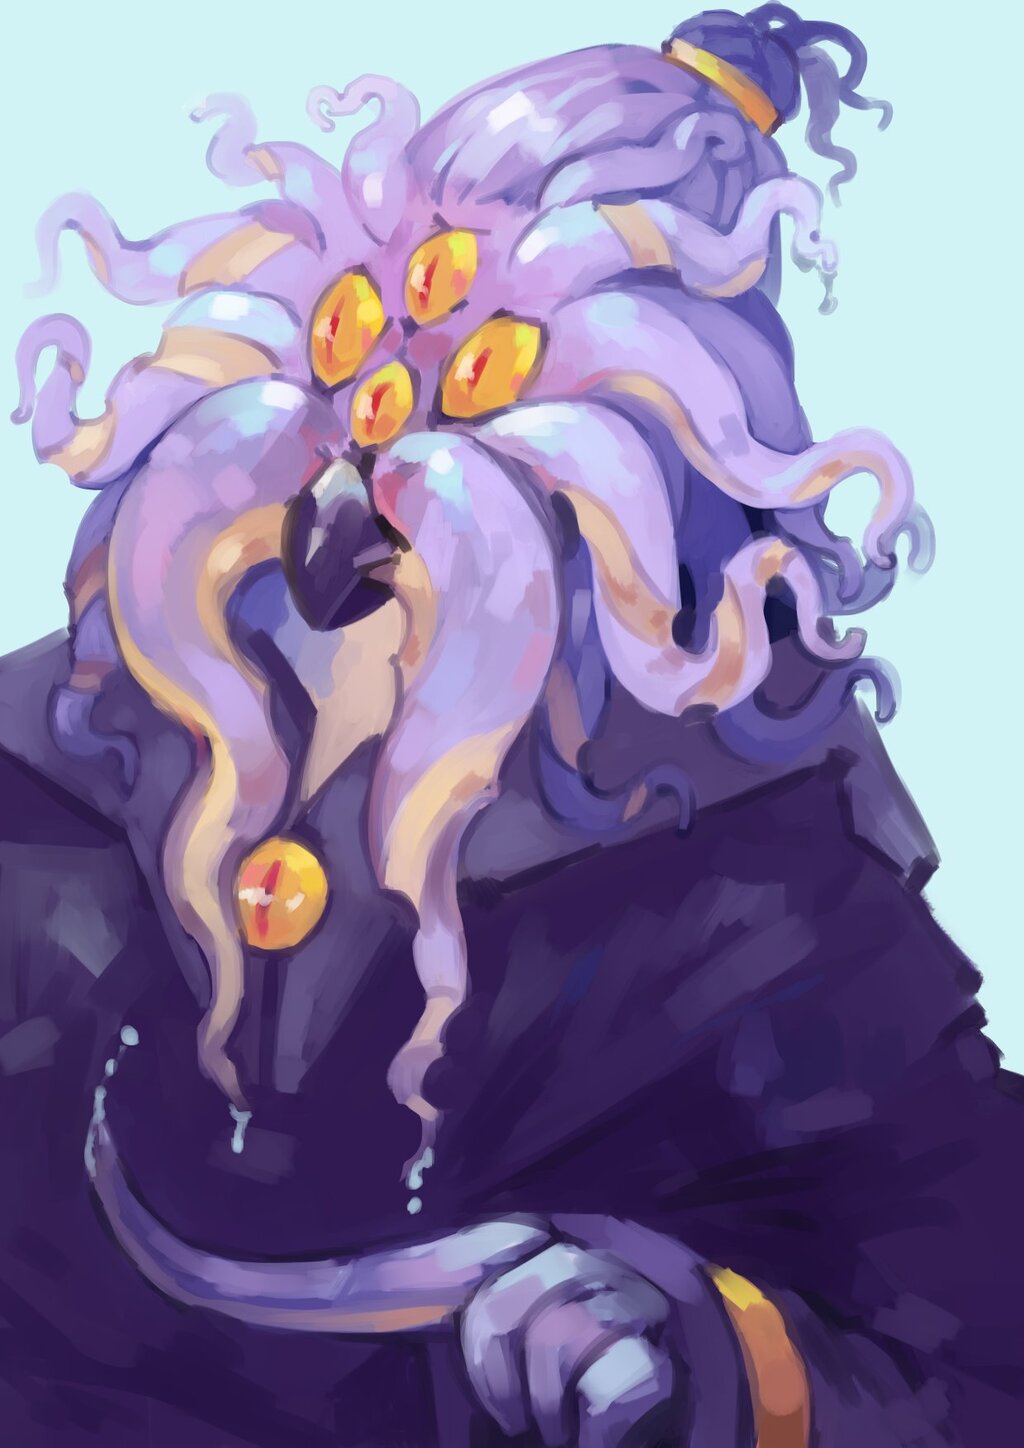 Squid guy